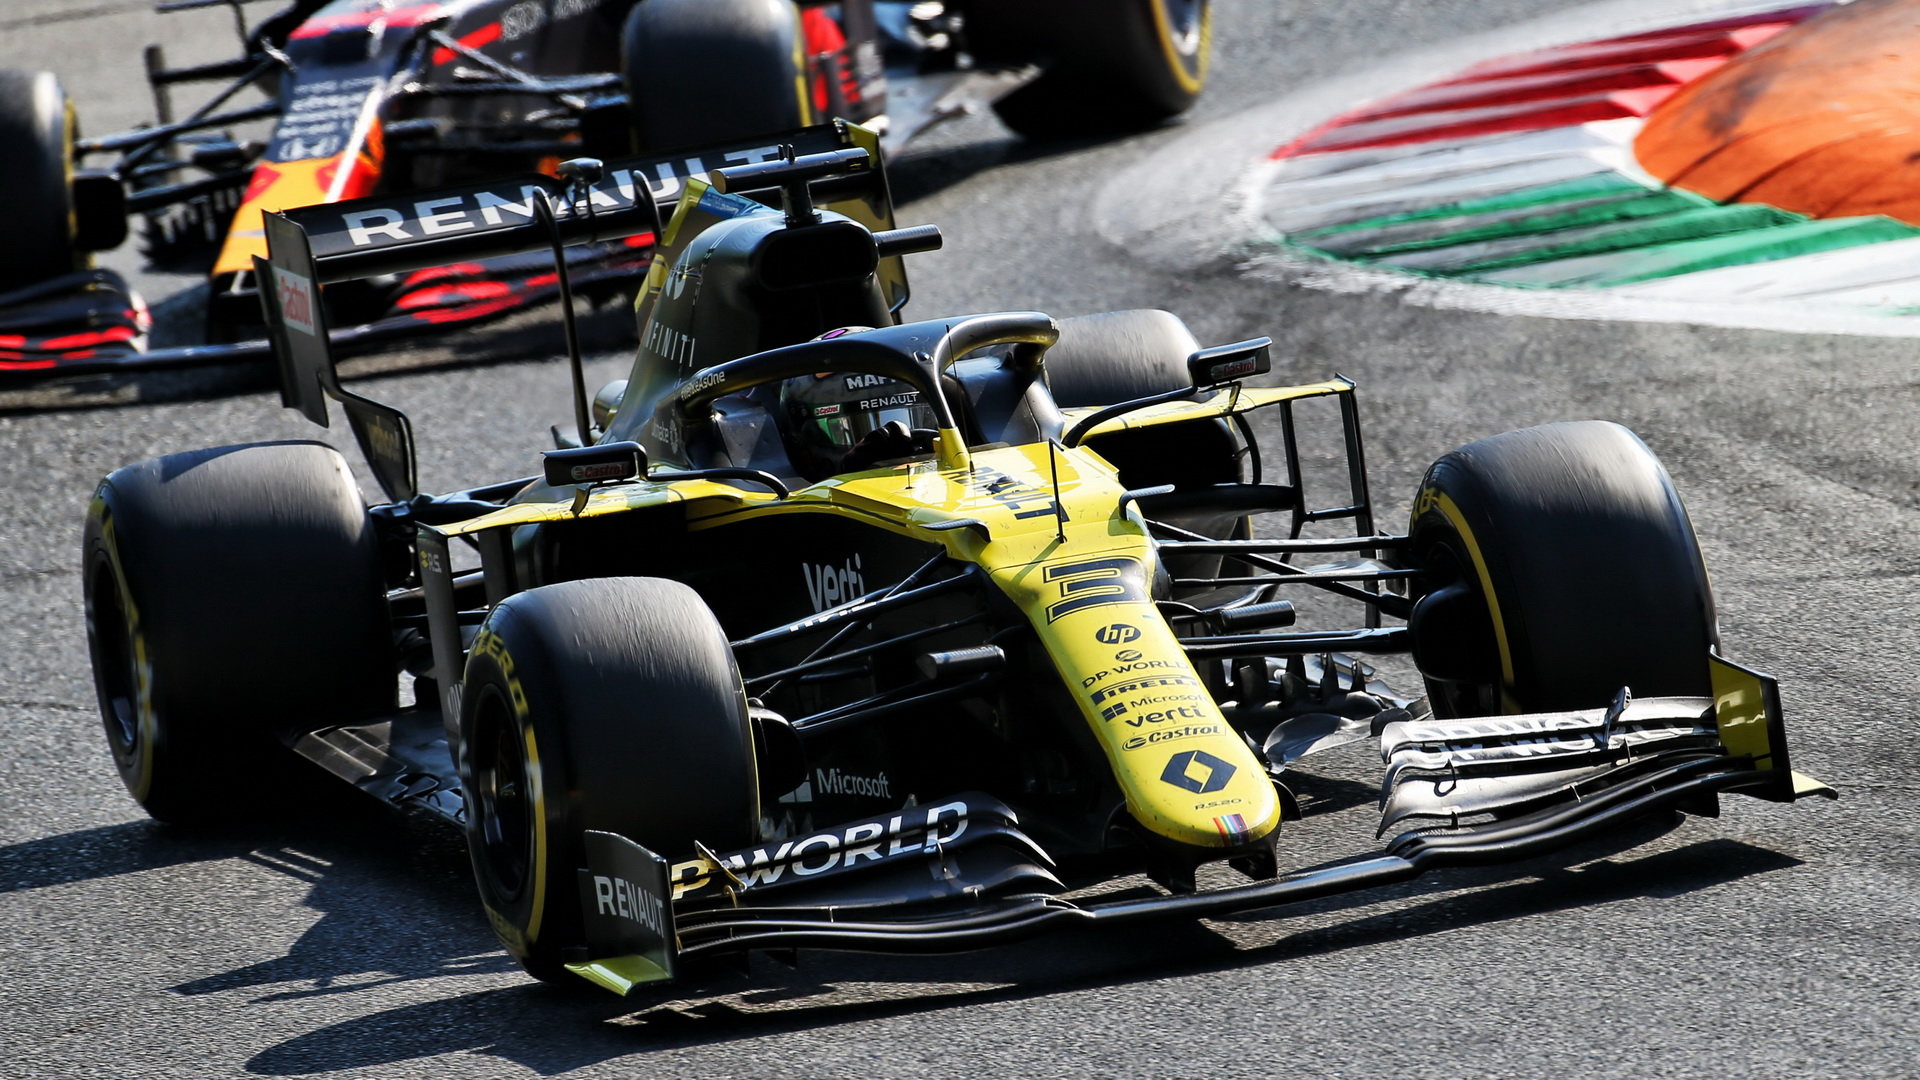 Daniel Ricciardo v závodě na Monze